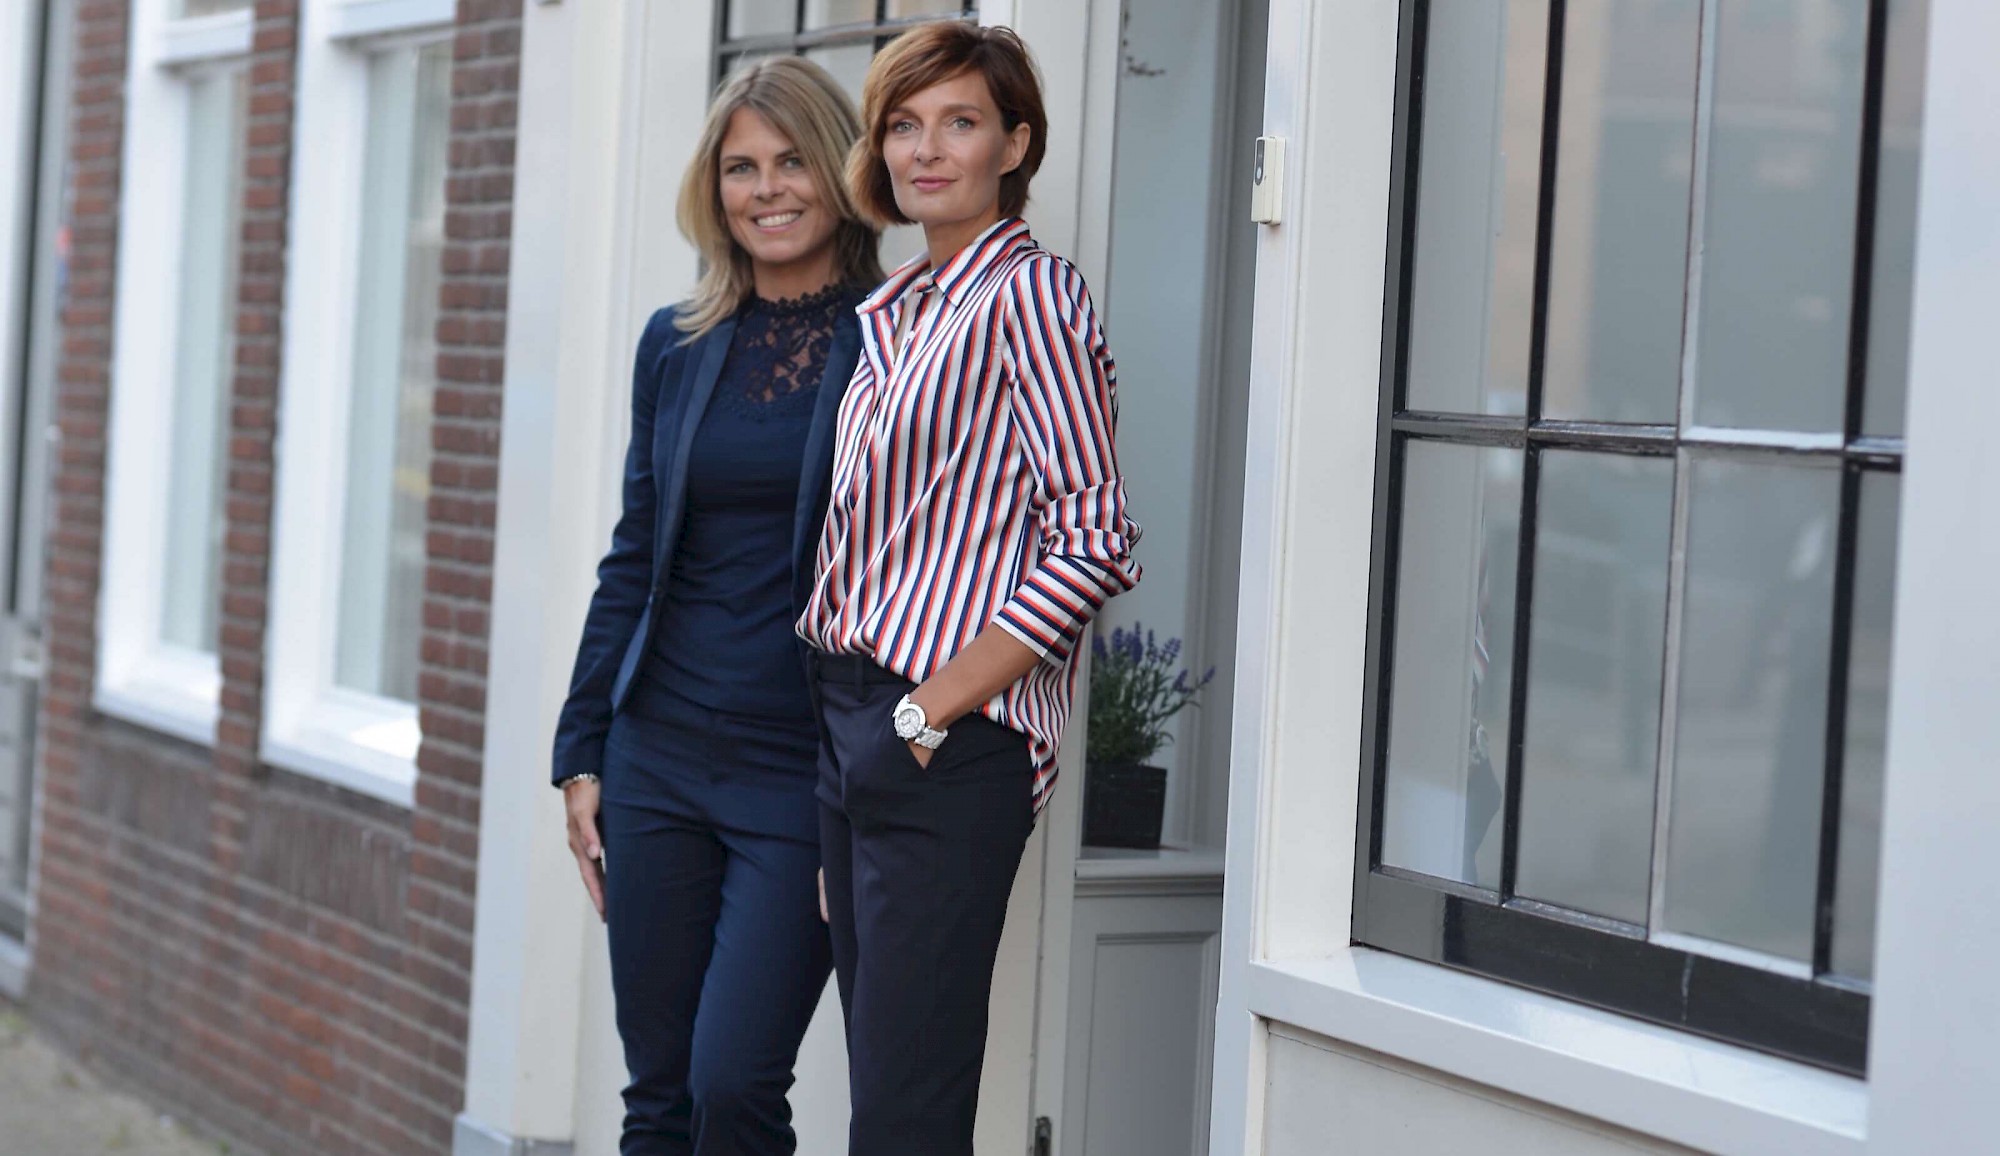 Hier krijgt u misschien wel het meest vrouwelijke hypotheekadvies van Nederland